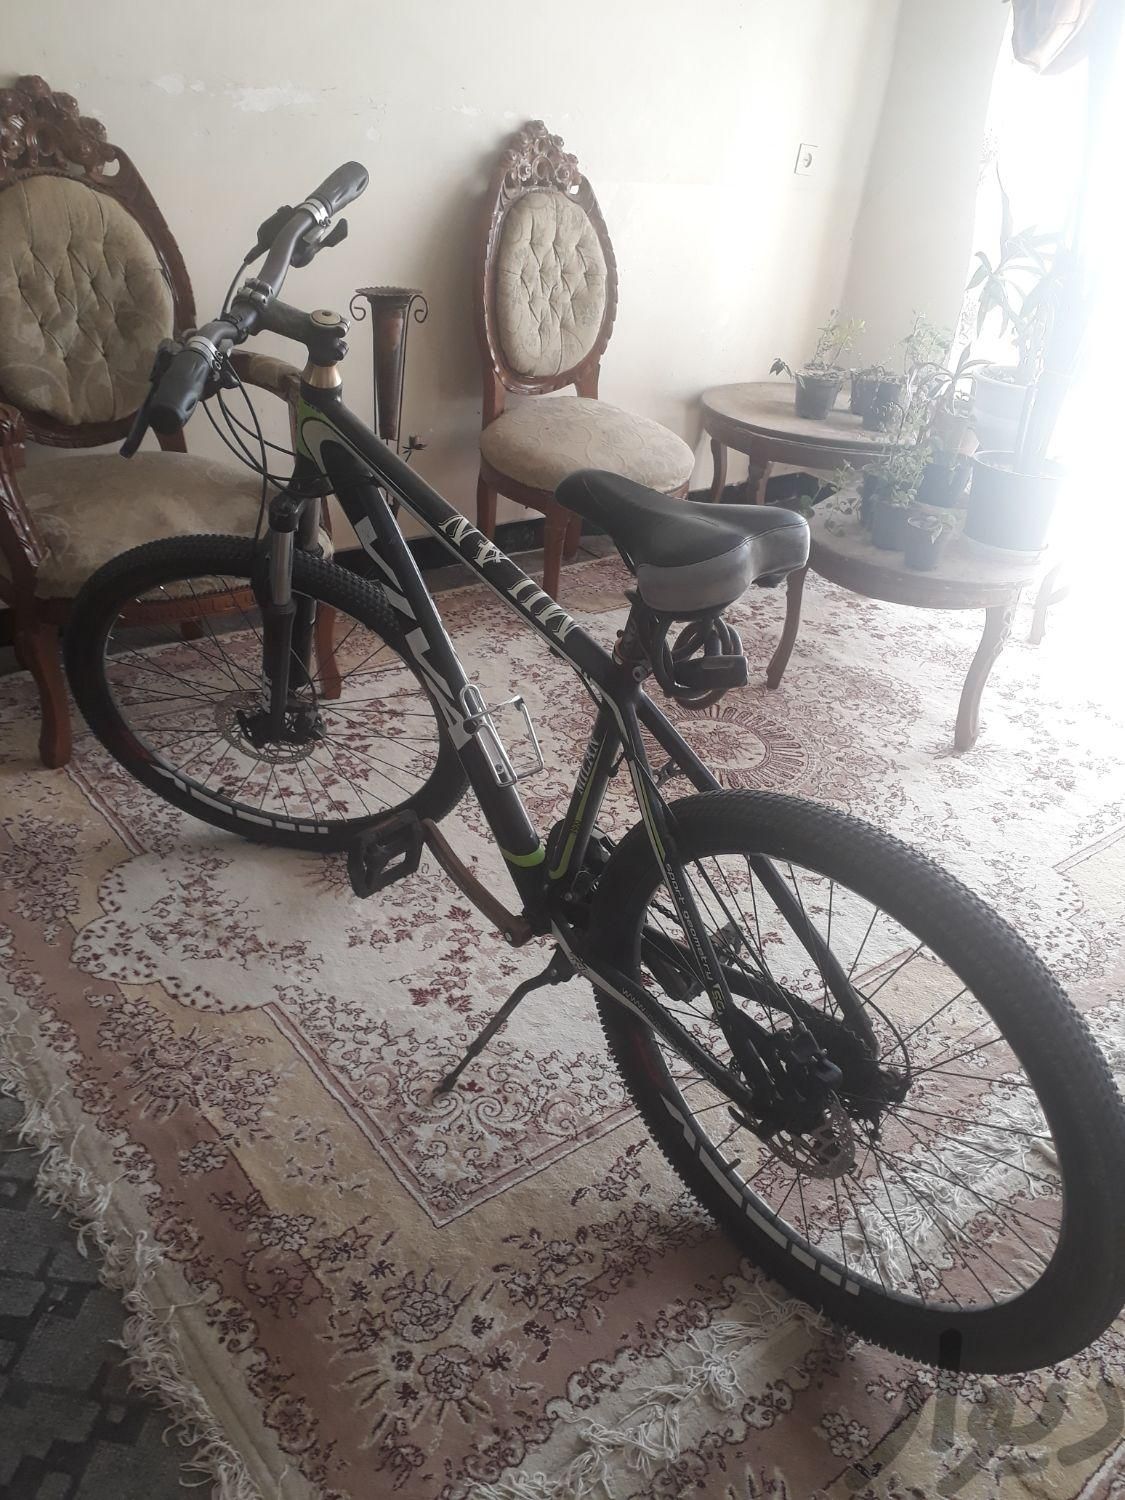 دوچرخه ویوا ترمز روغنی|دوچرخه، اسکیت، اسکوتر|فیروزآباد, |دیوار